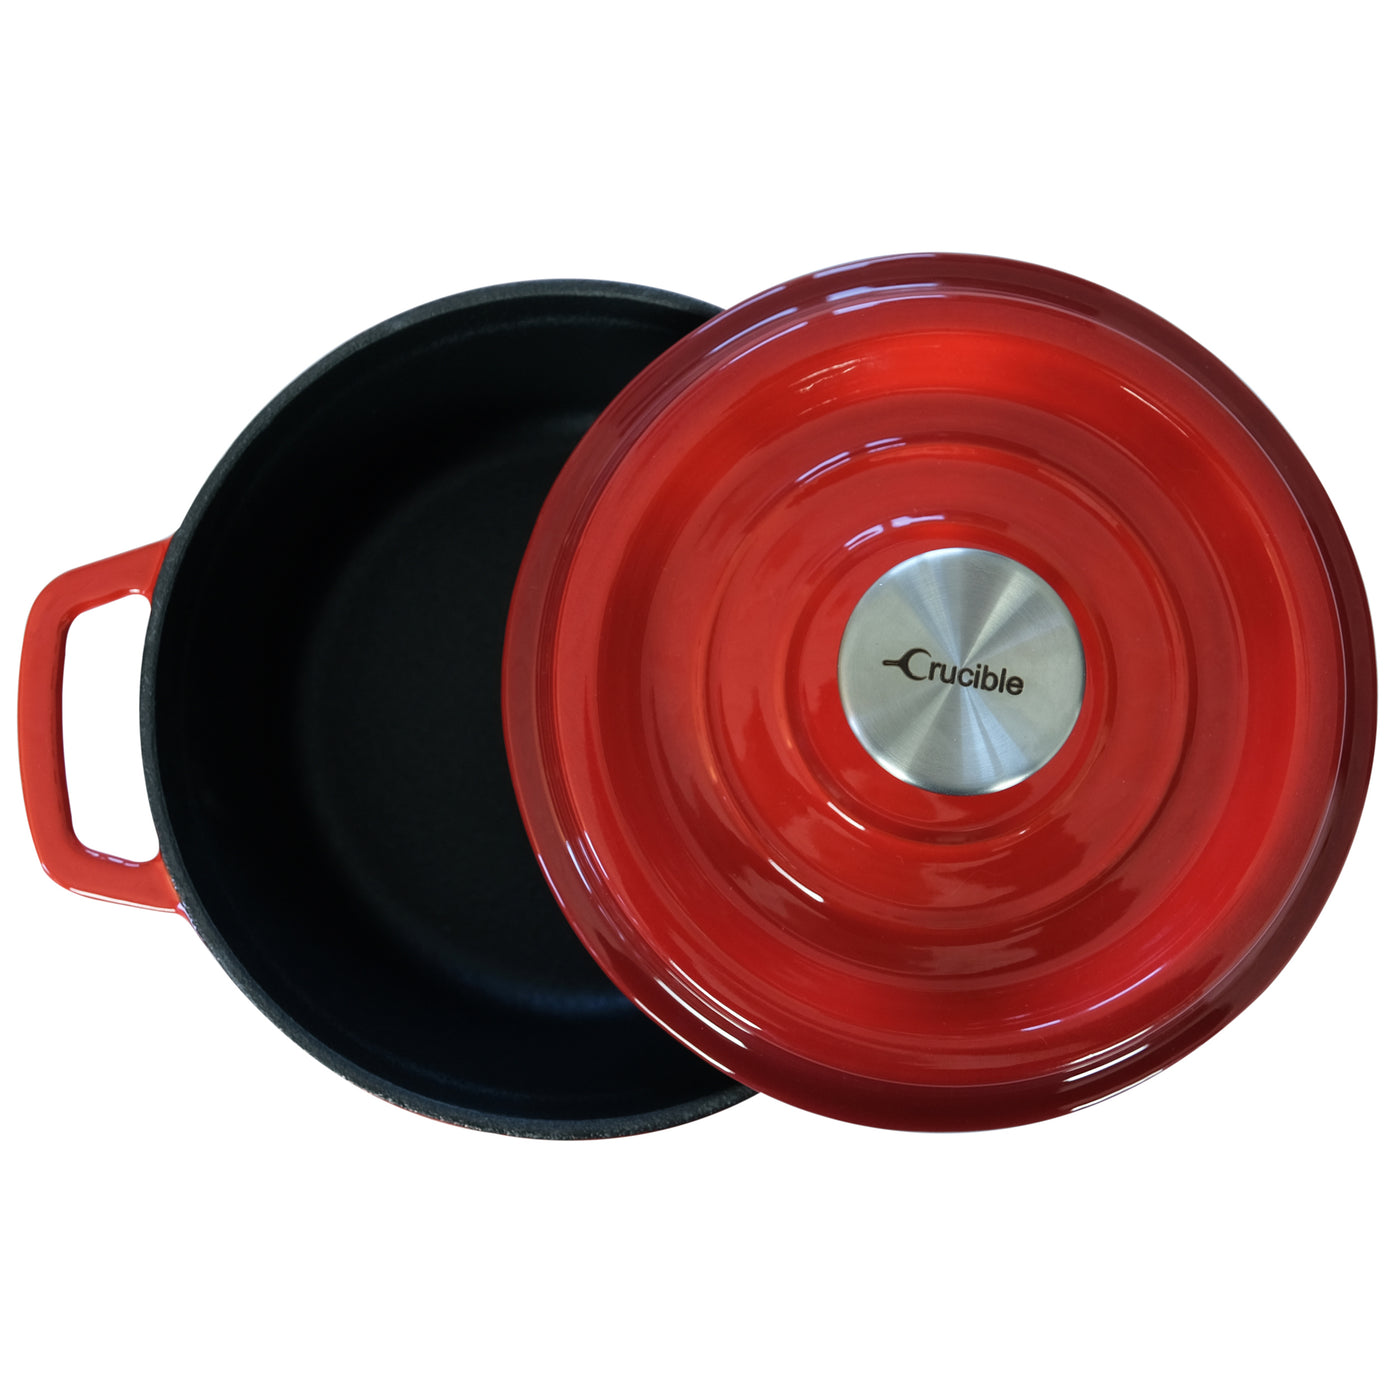 Emaljeret støbejerns hollandsk ovngryde (7,87" / 20 cm diameter) grydeske - rund rød